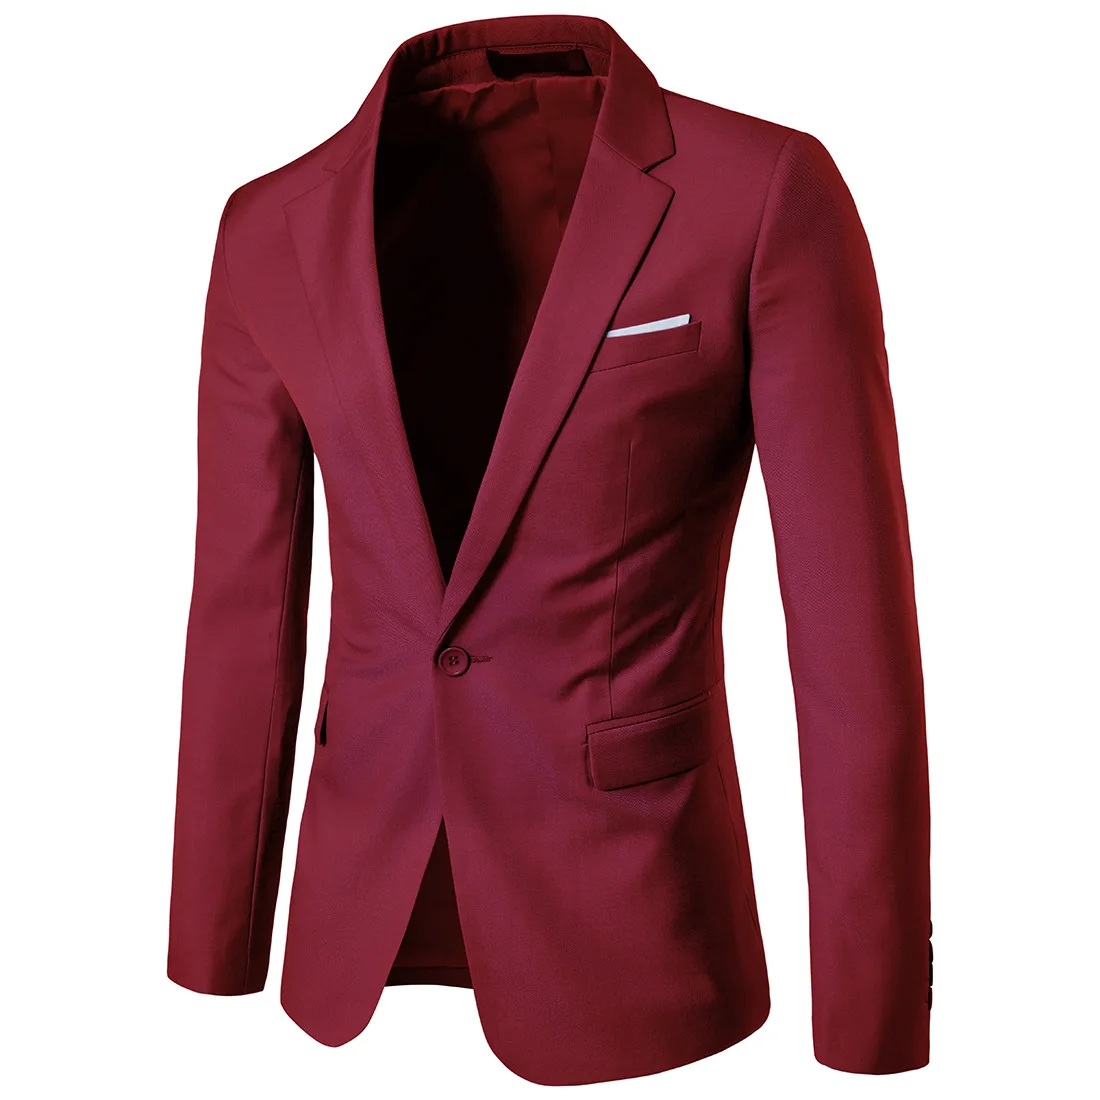 S-6xl Men's Blazer Suit Or Wedding Suit For Business Office Cotton ...